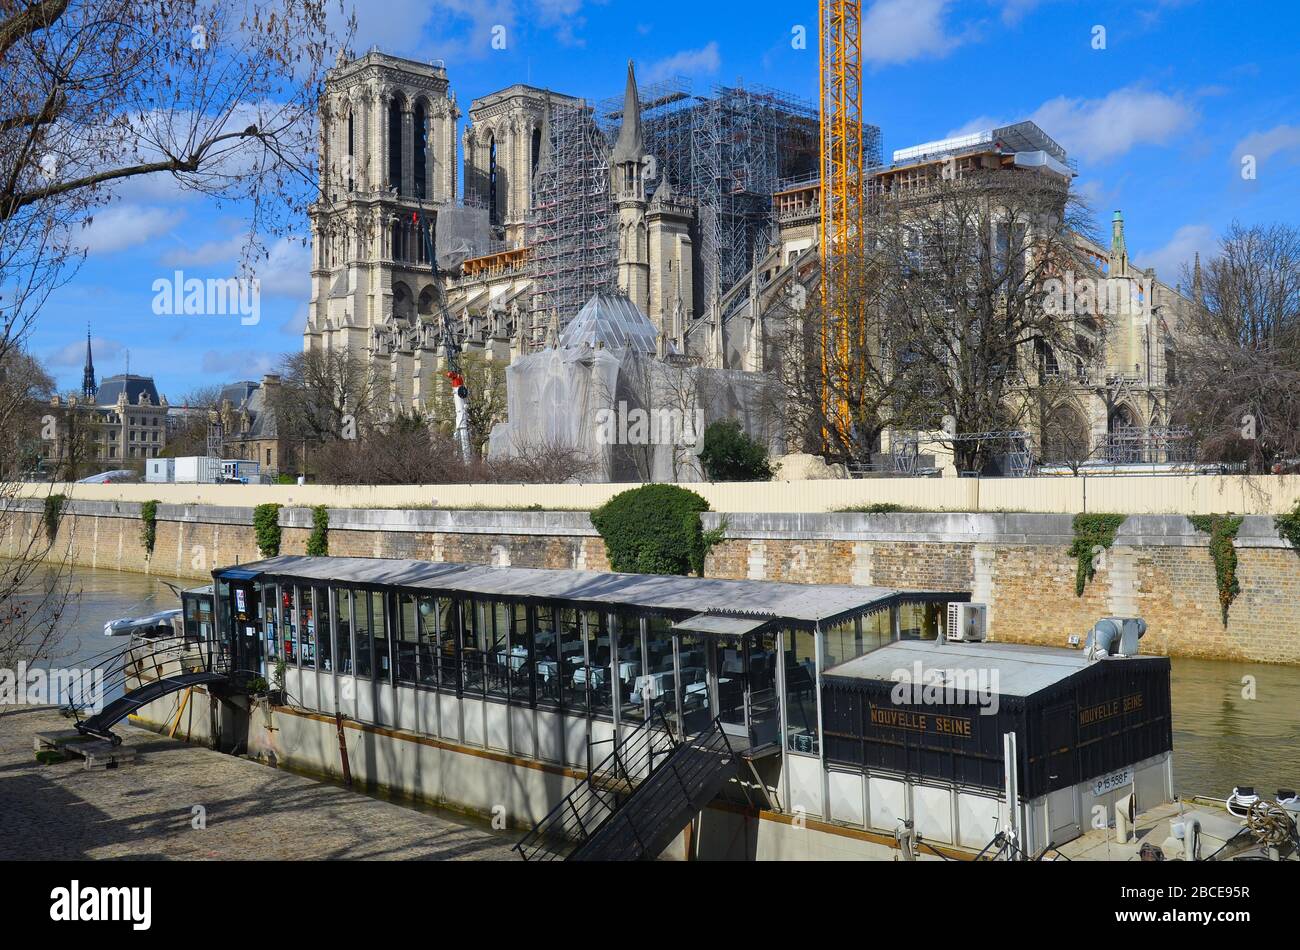 Paris, die Hauptstadt Frankreichs, am letzten Tag vor der Ausgangssperre wegen Corona Virus: die Kathedrale Notre Dame im Wiederaufbau Stock Photo